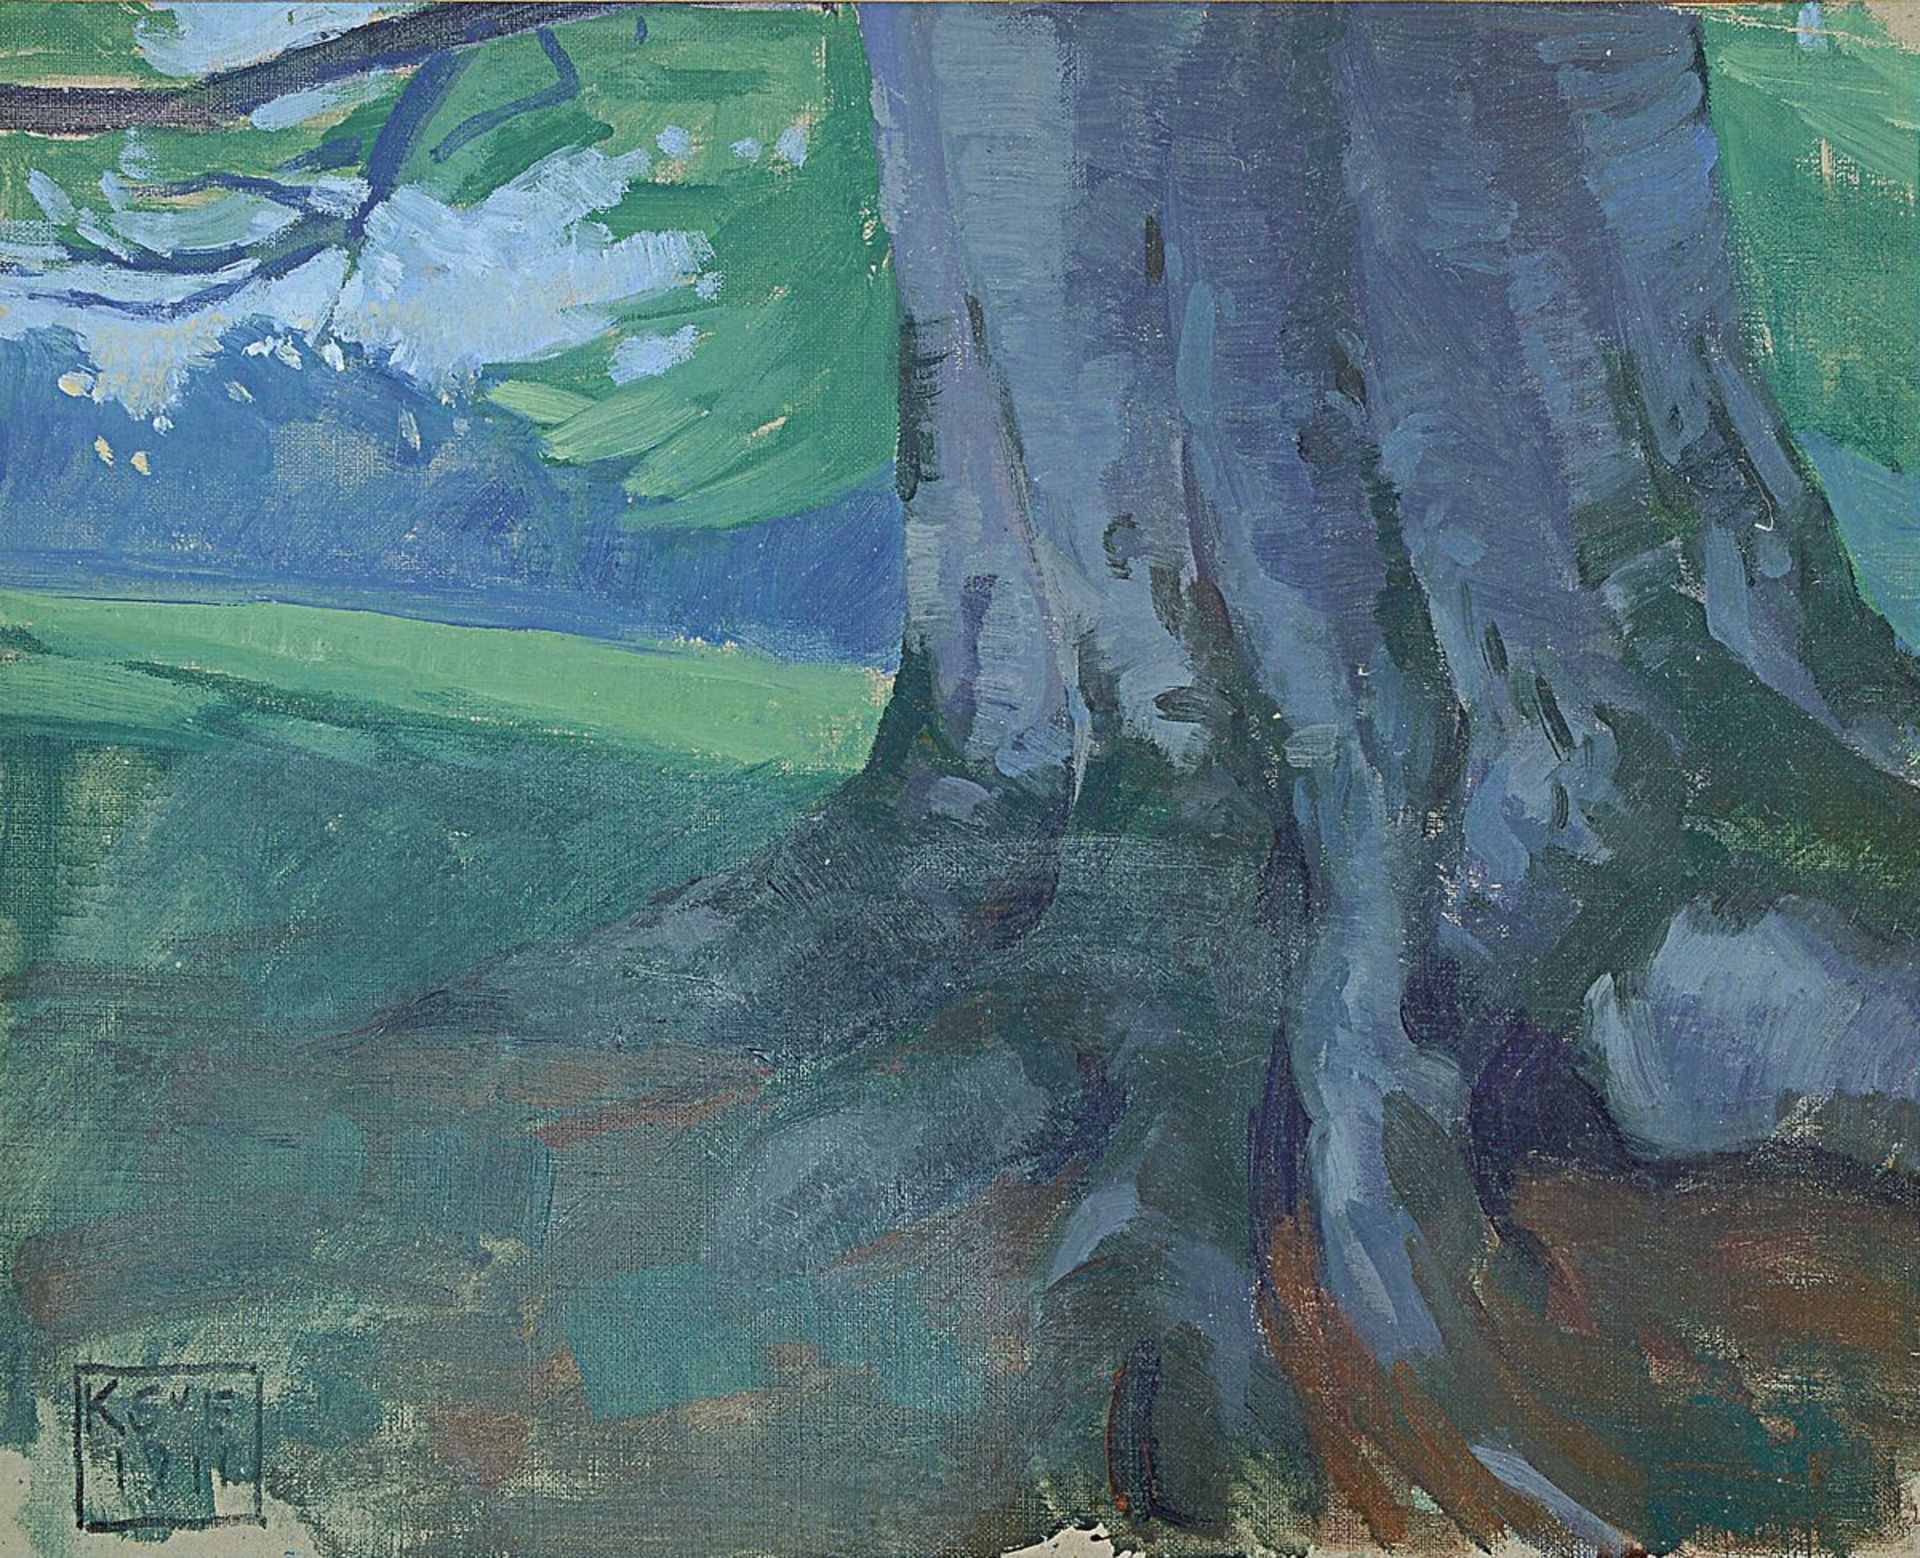 Karl Schmoll von Eisenwerth, 1879 Wien - 1948, Landschaft mit Blick auf eine Lichtung und